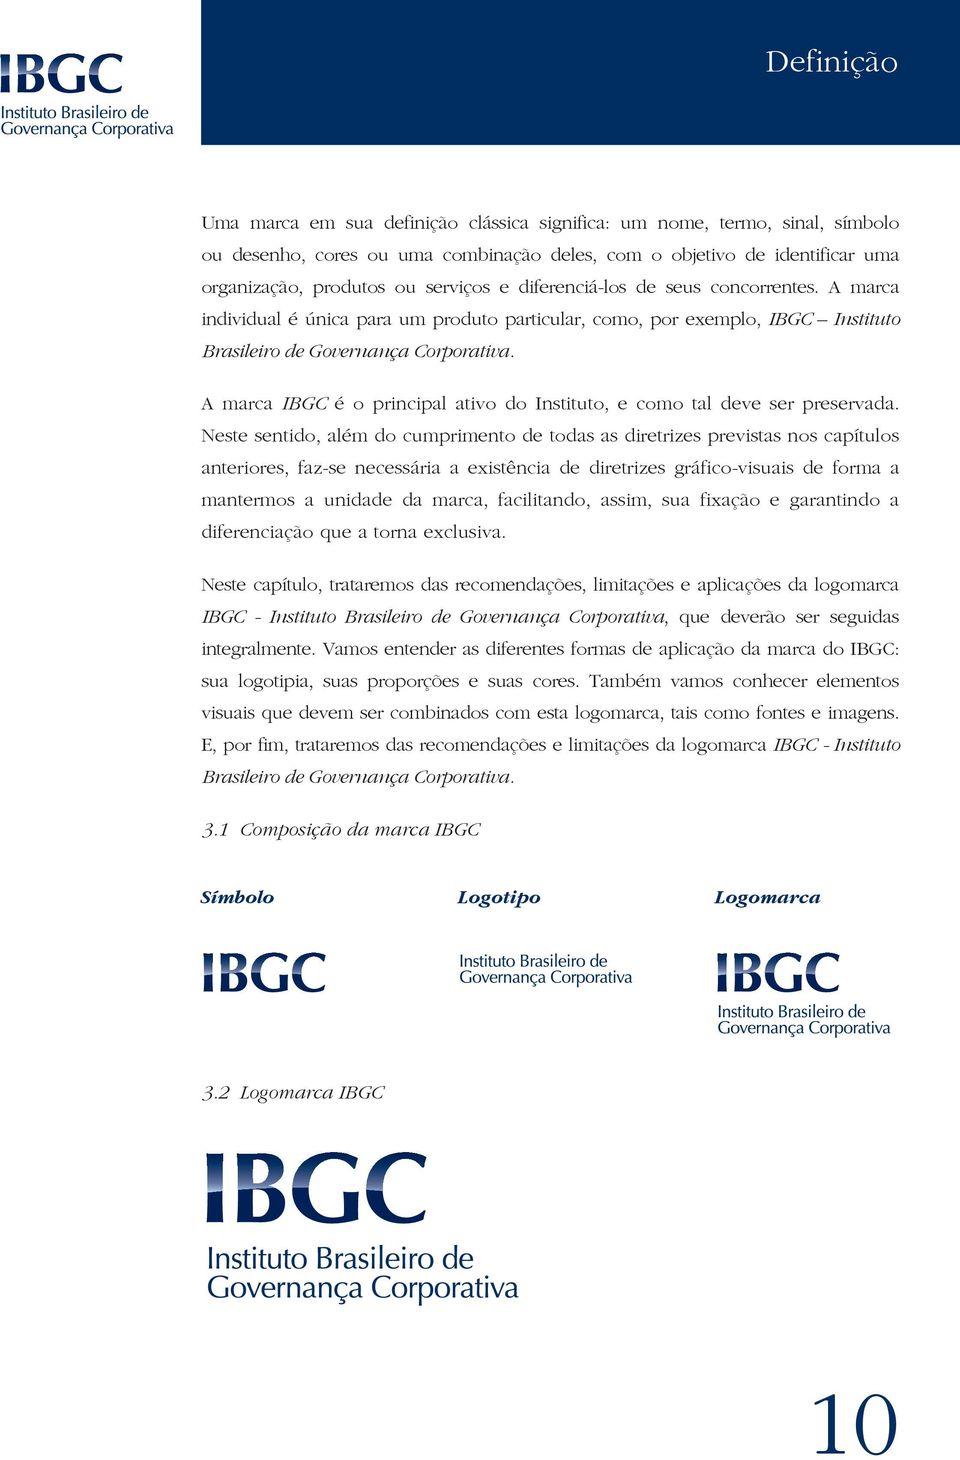 A marca IBGC é o principal ativo do Instituto, e como tal deve ser preservada.